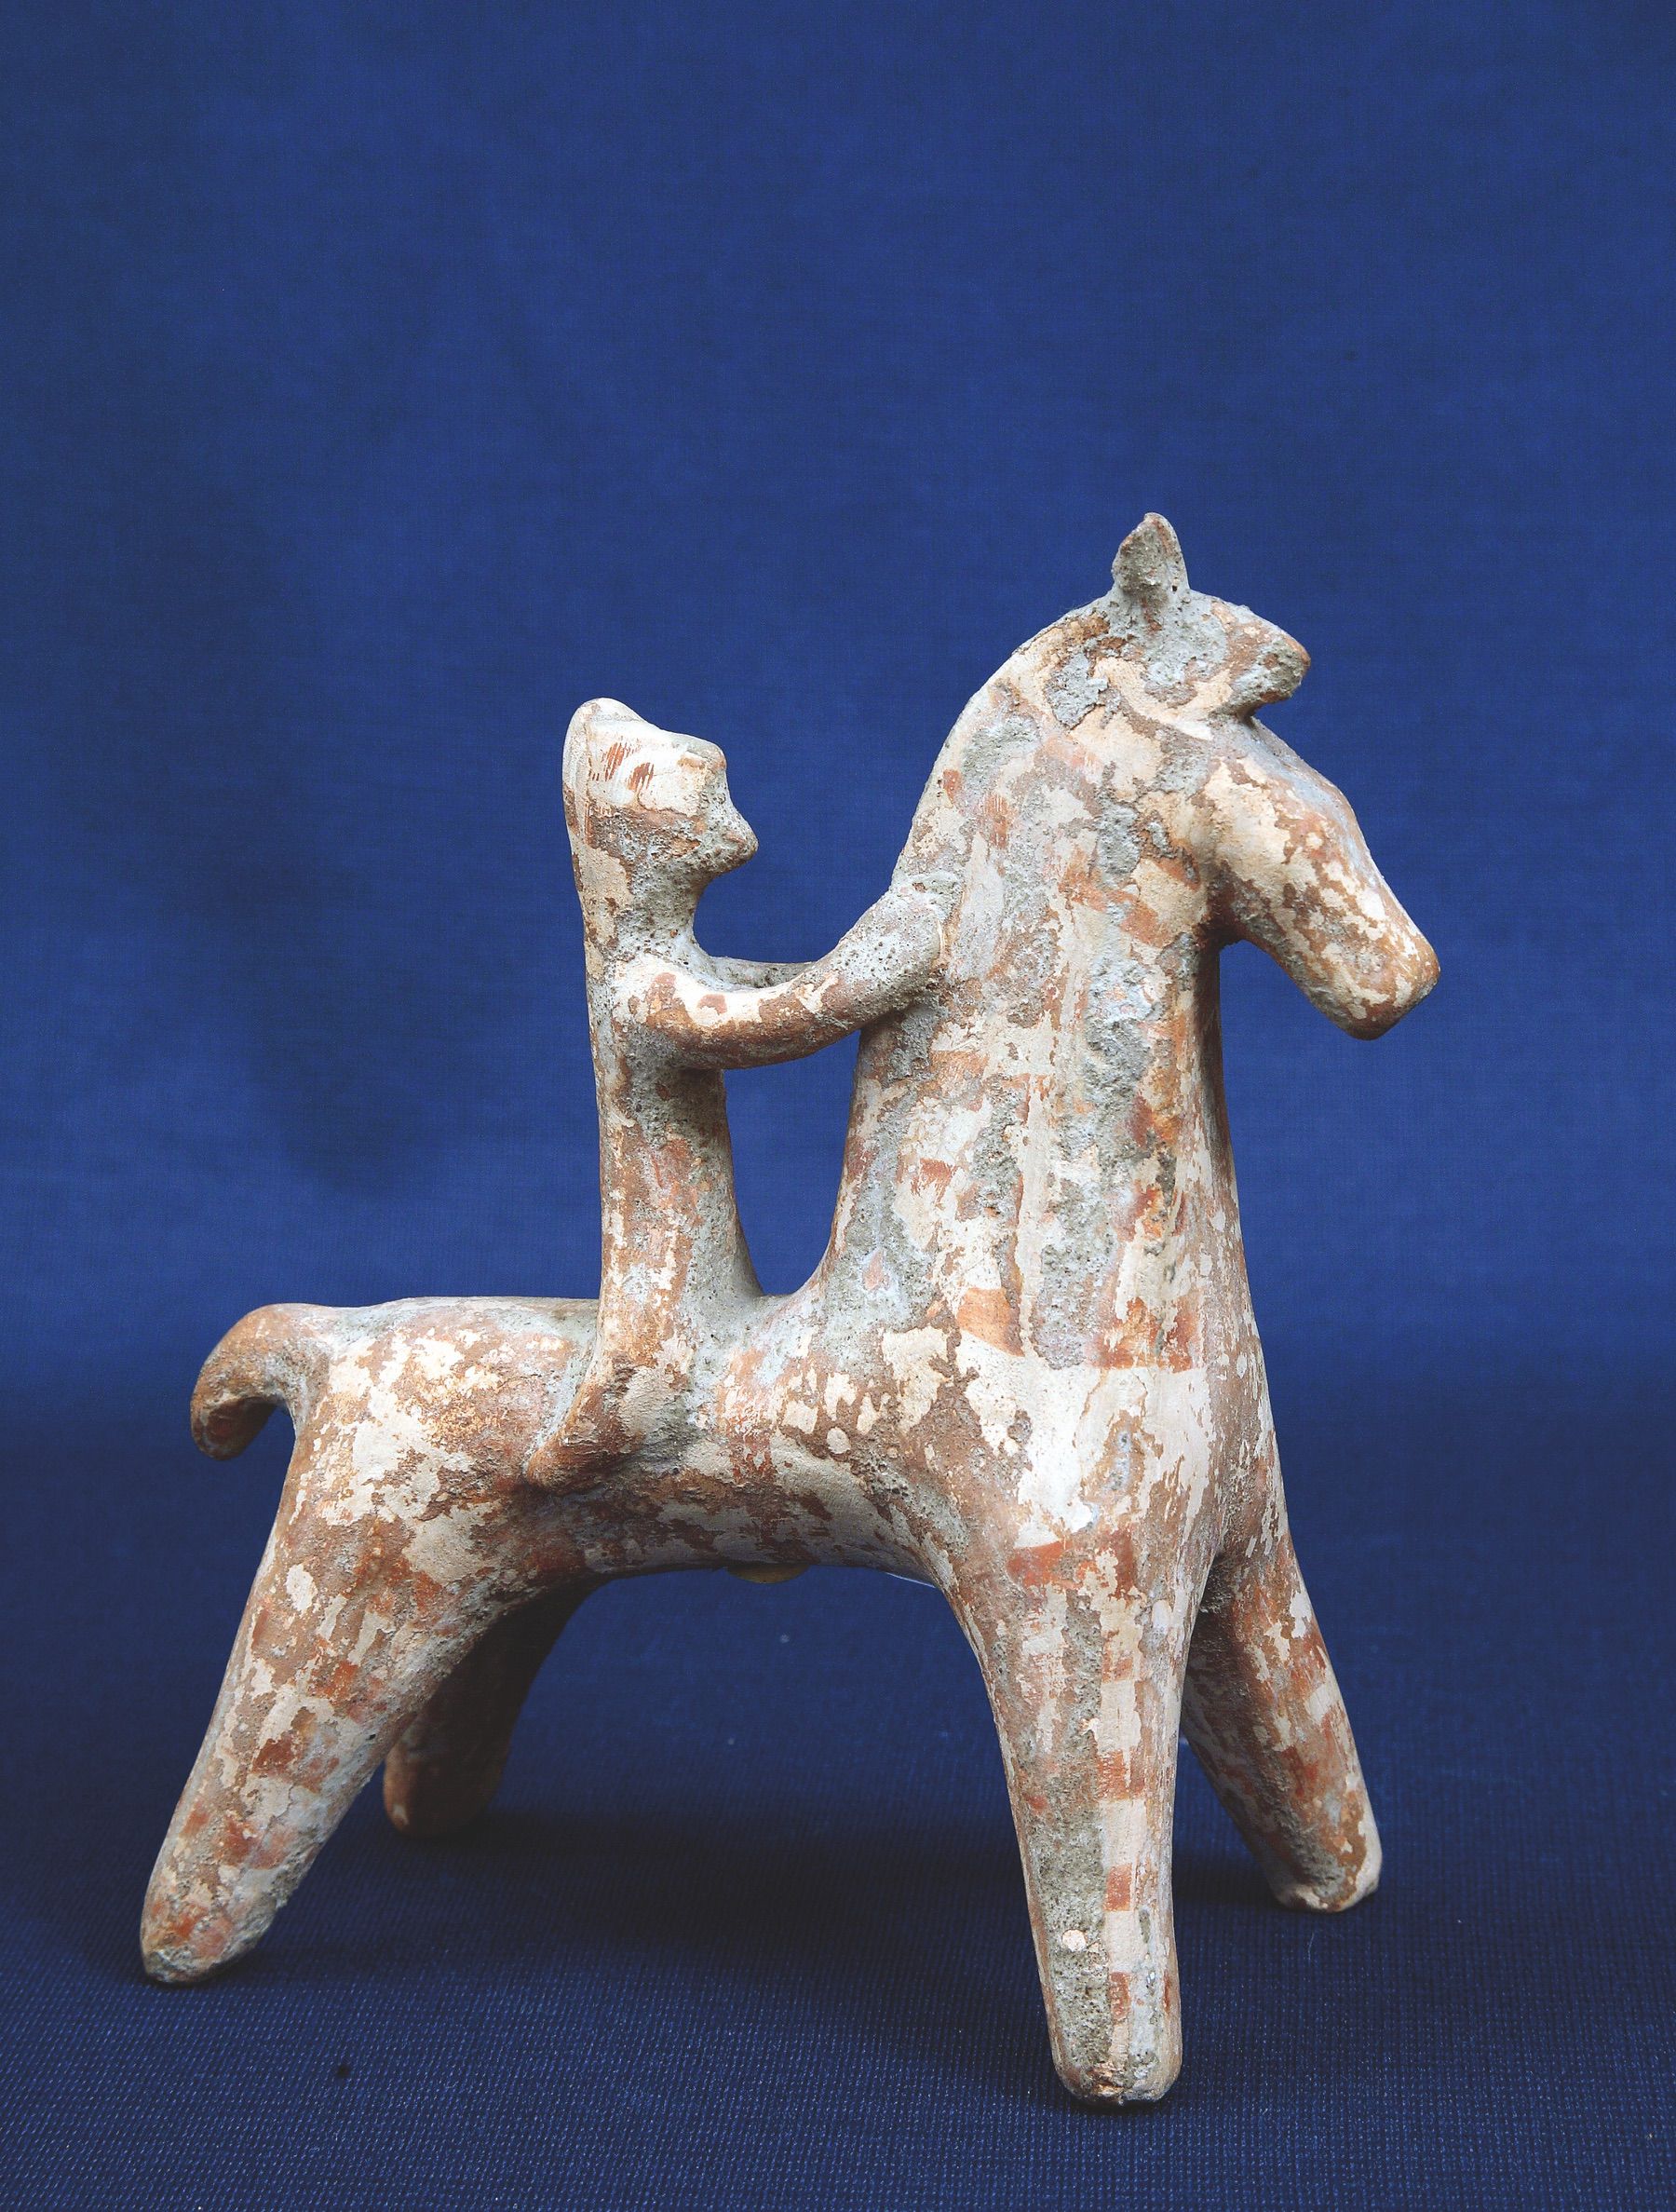 26. Figurina di cavaliere in terracotta. VI sec.a.C.